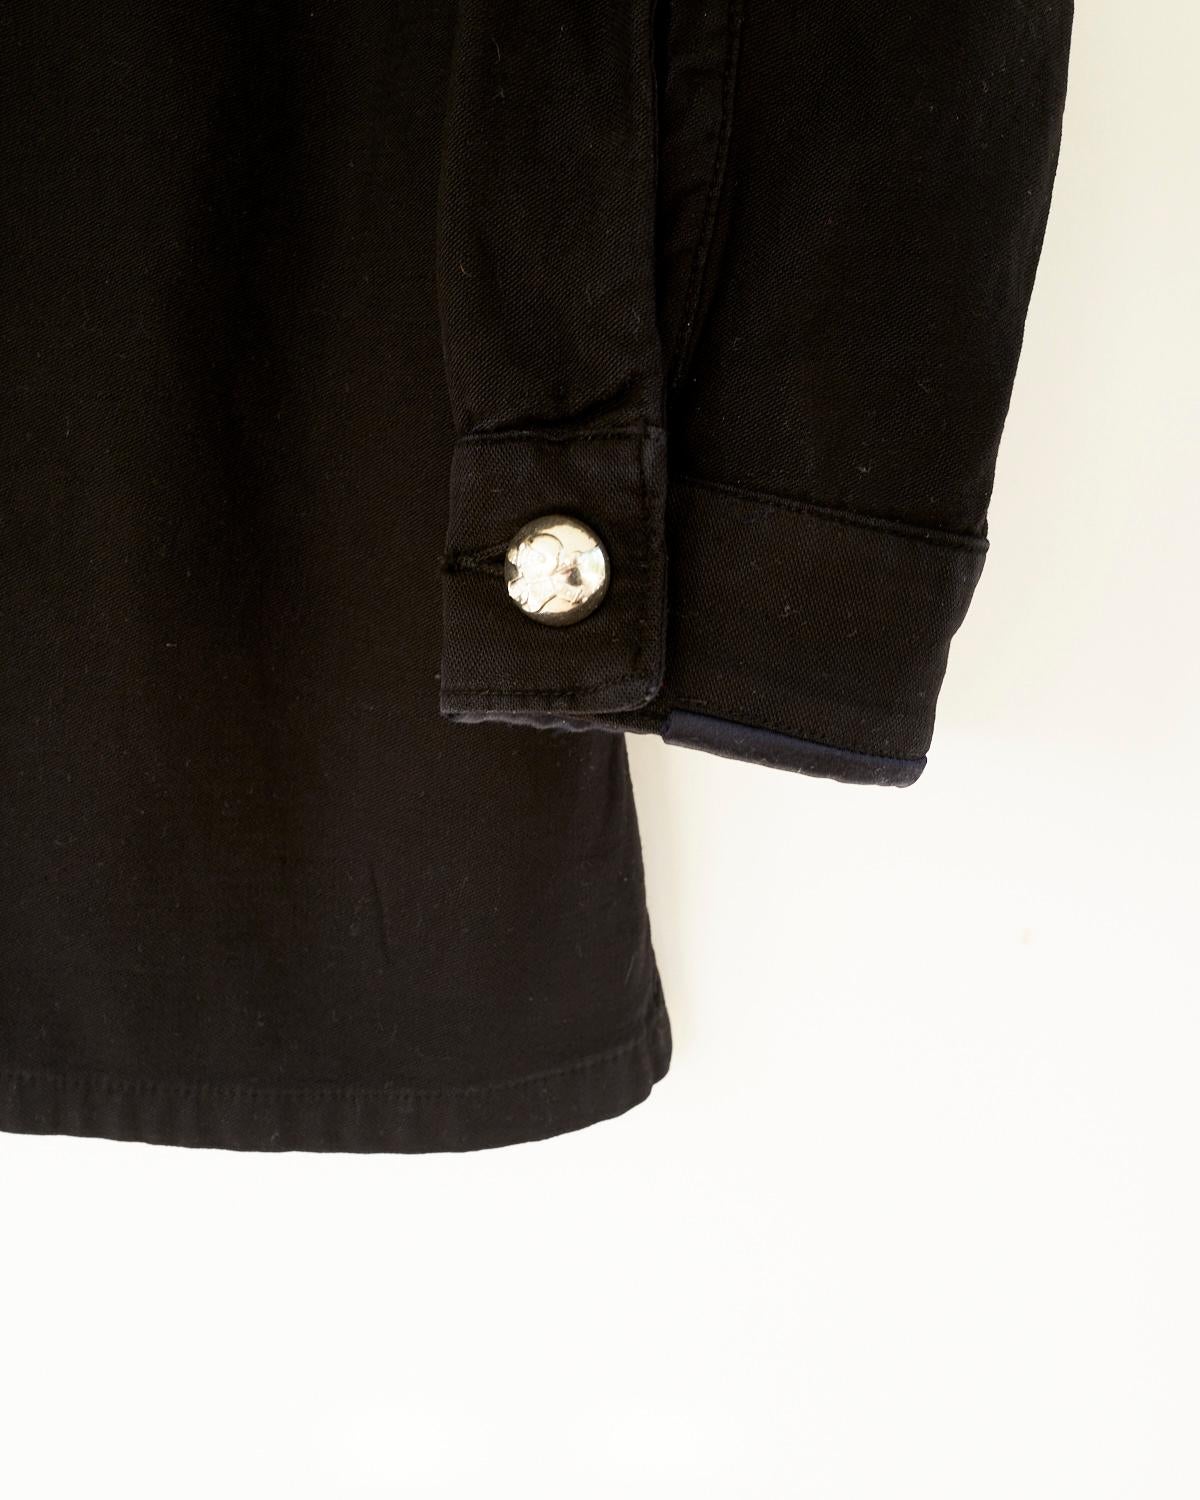 Embellished Fringe Jacket Black Silver Buttons Military Shirt J Dauphin 1